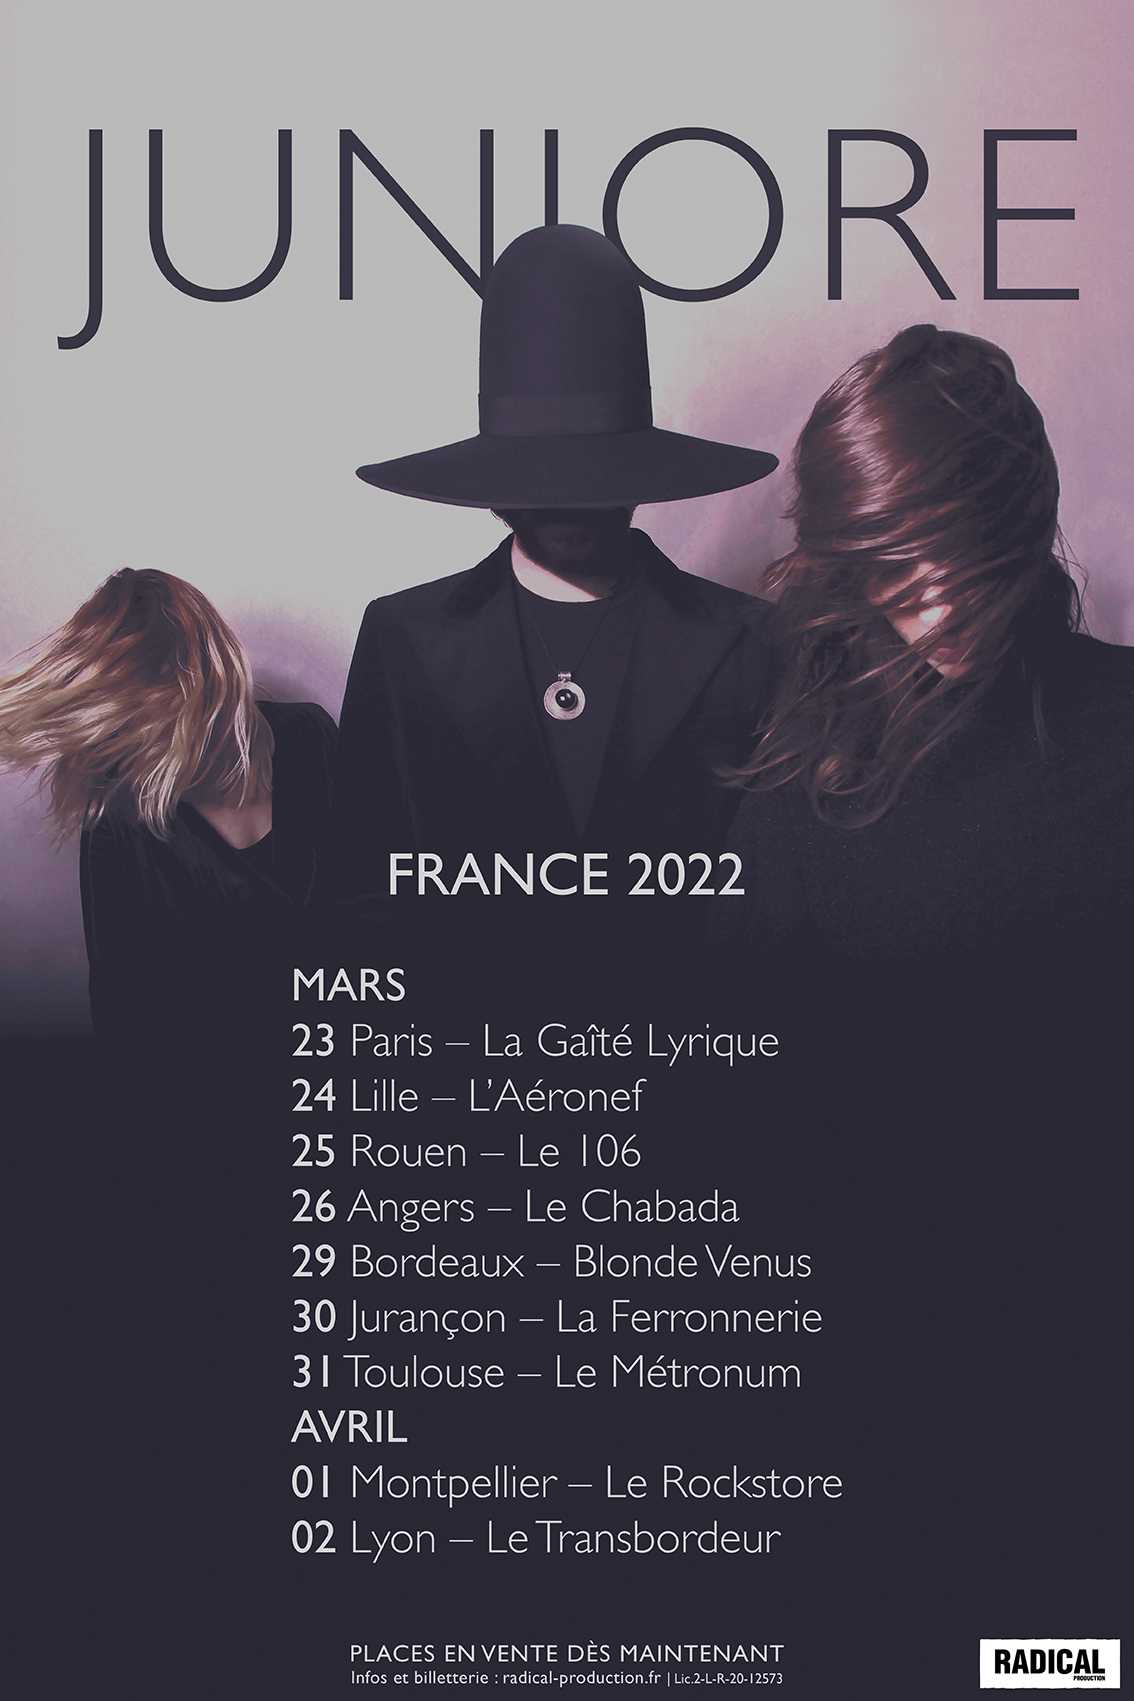 Juniore - France 2022